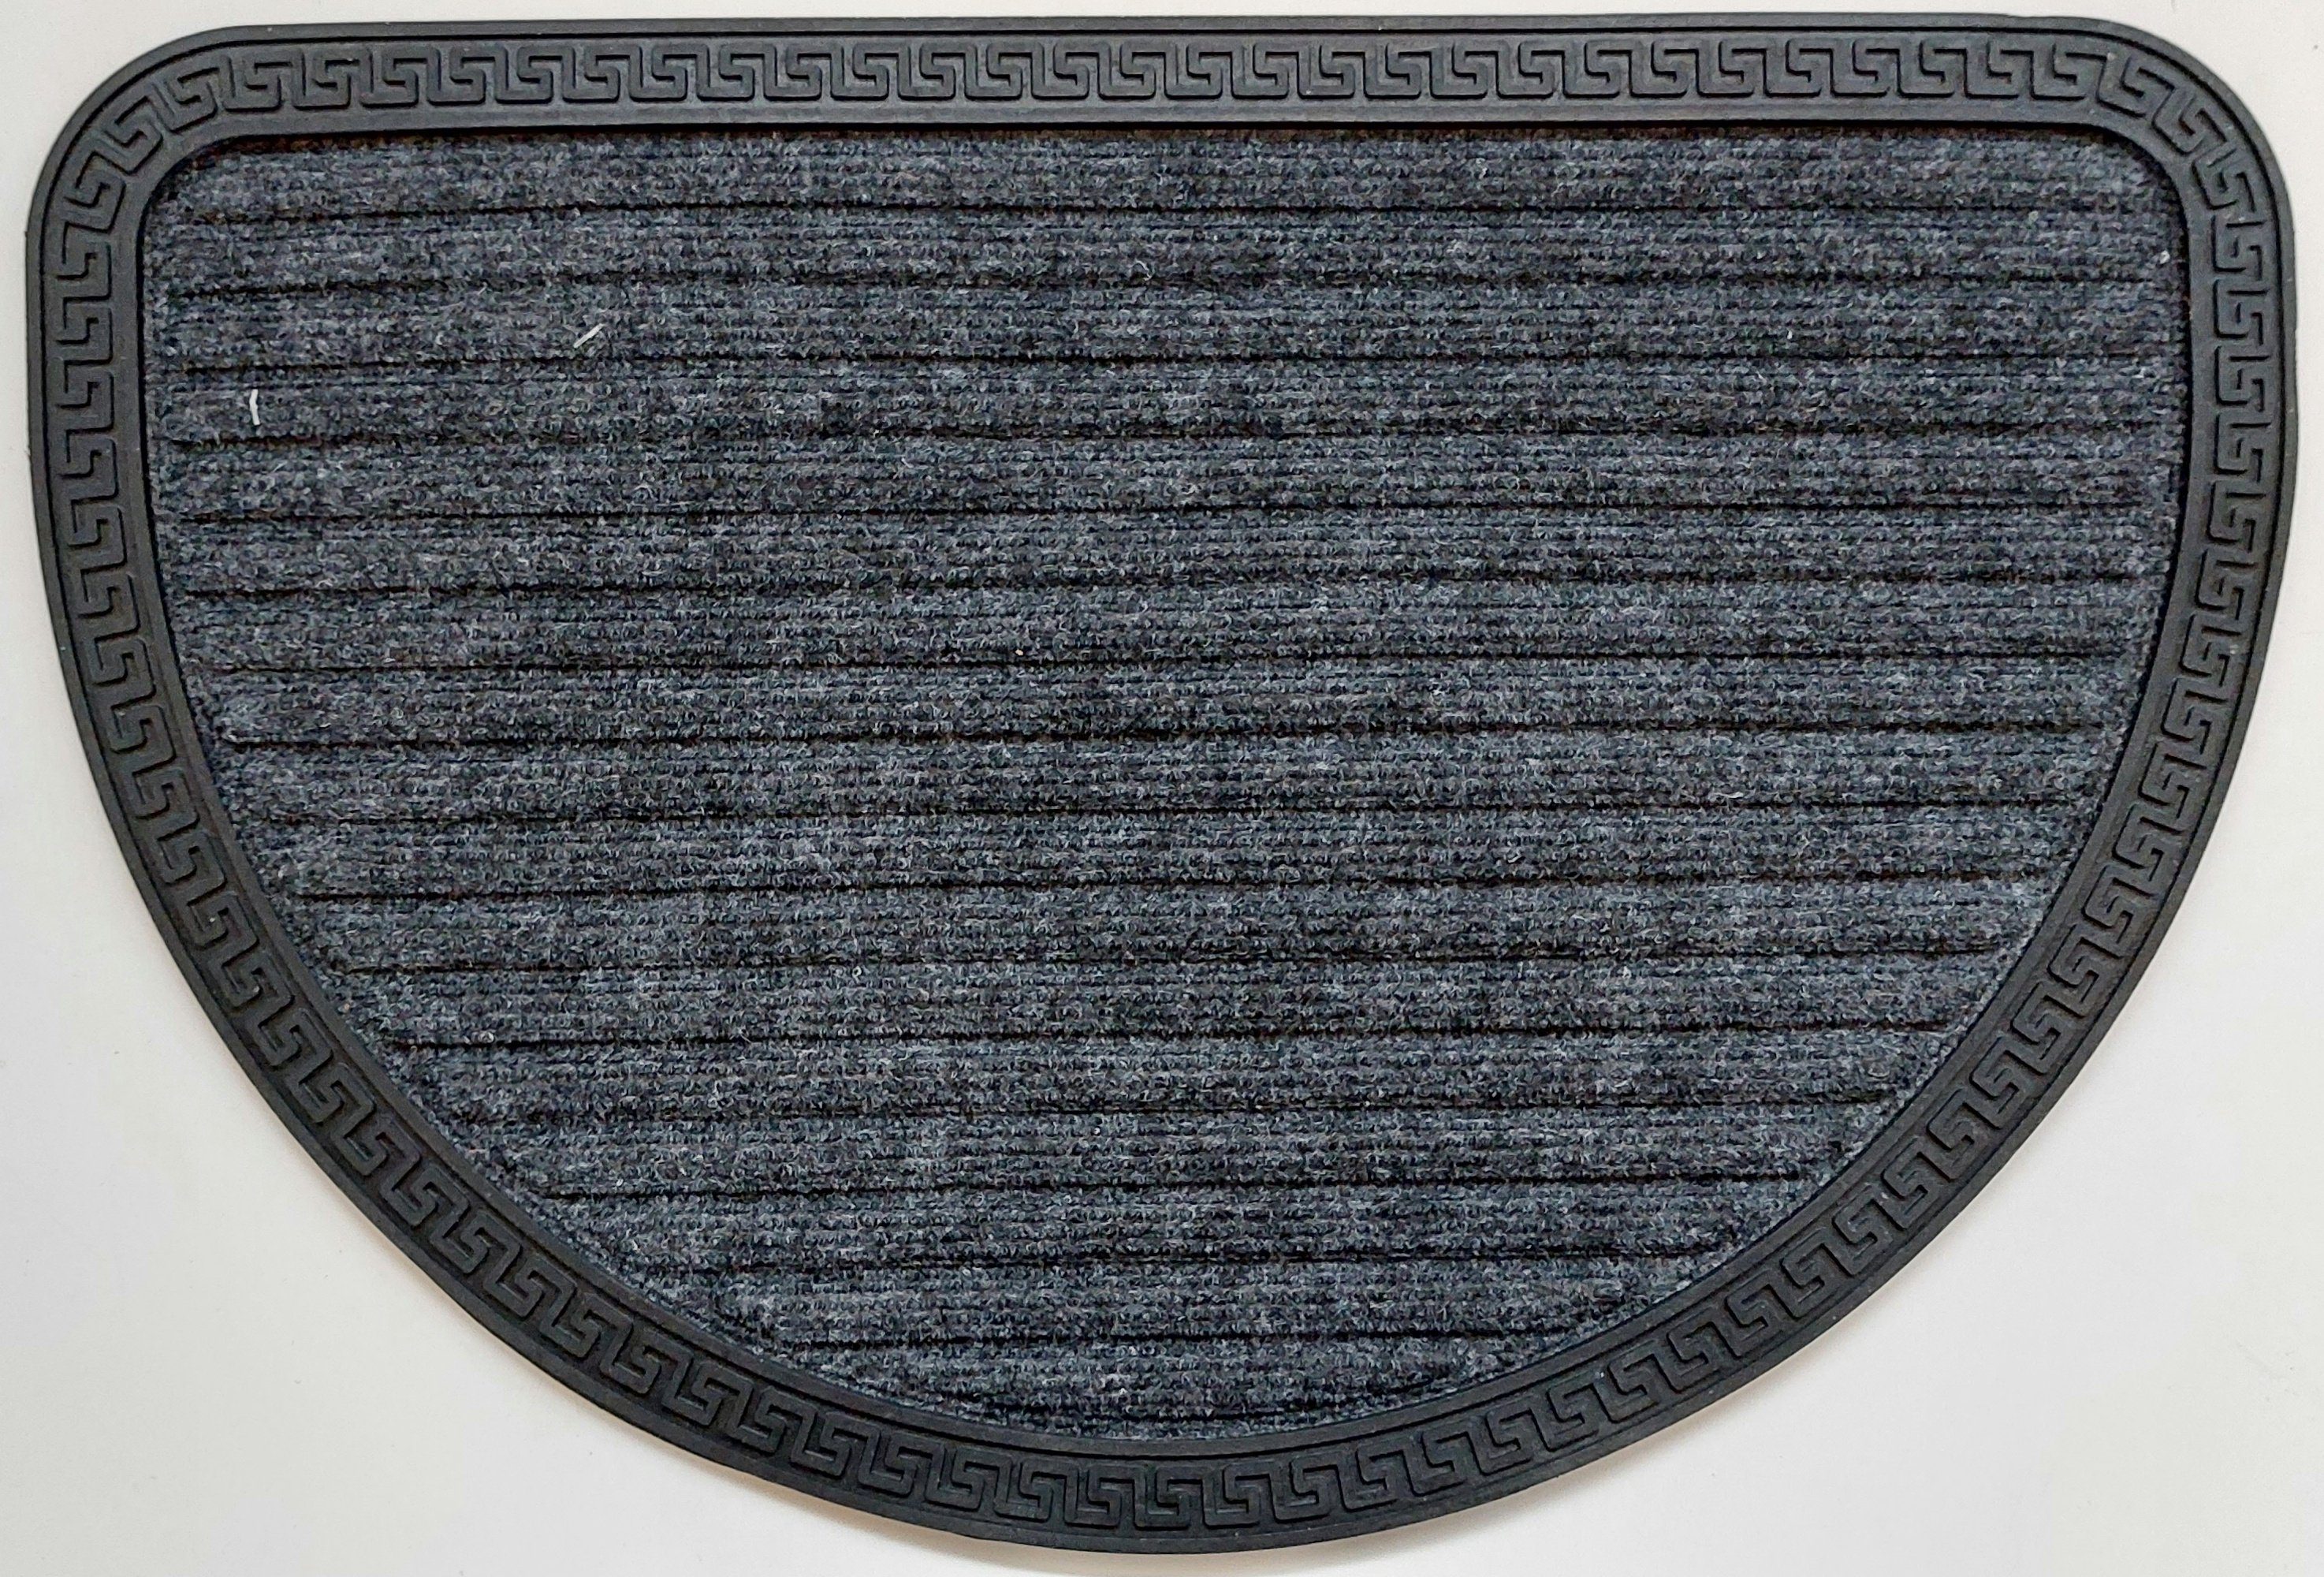 Fußmatte Kreta, oKu-Tex, halbrund, Türvorleger halbrund rechteckig mit Gummirand griechisches Design rutschfest wetterfest Innen und Außen grau anthrazit, 40 x 60 cm